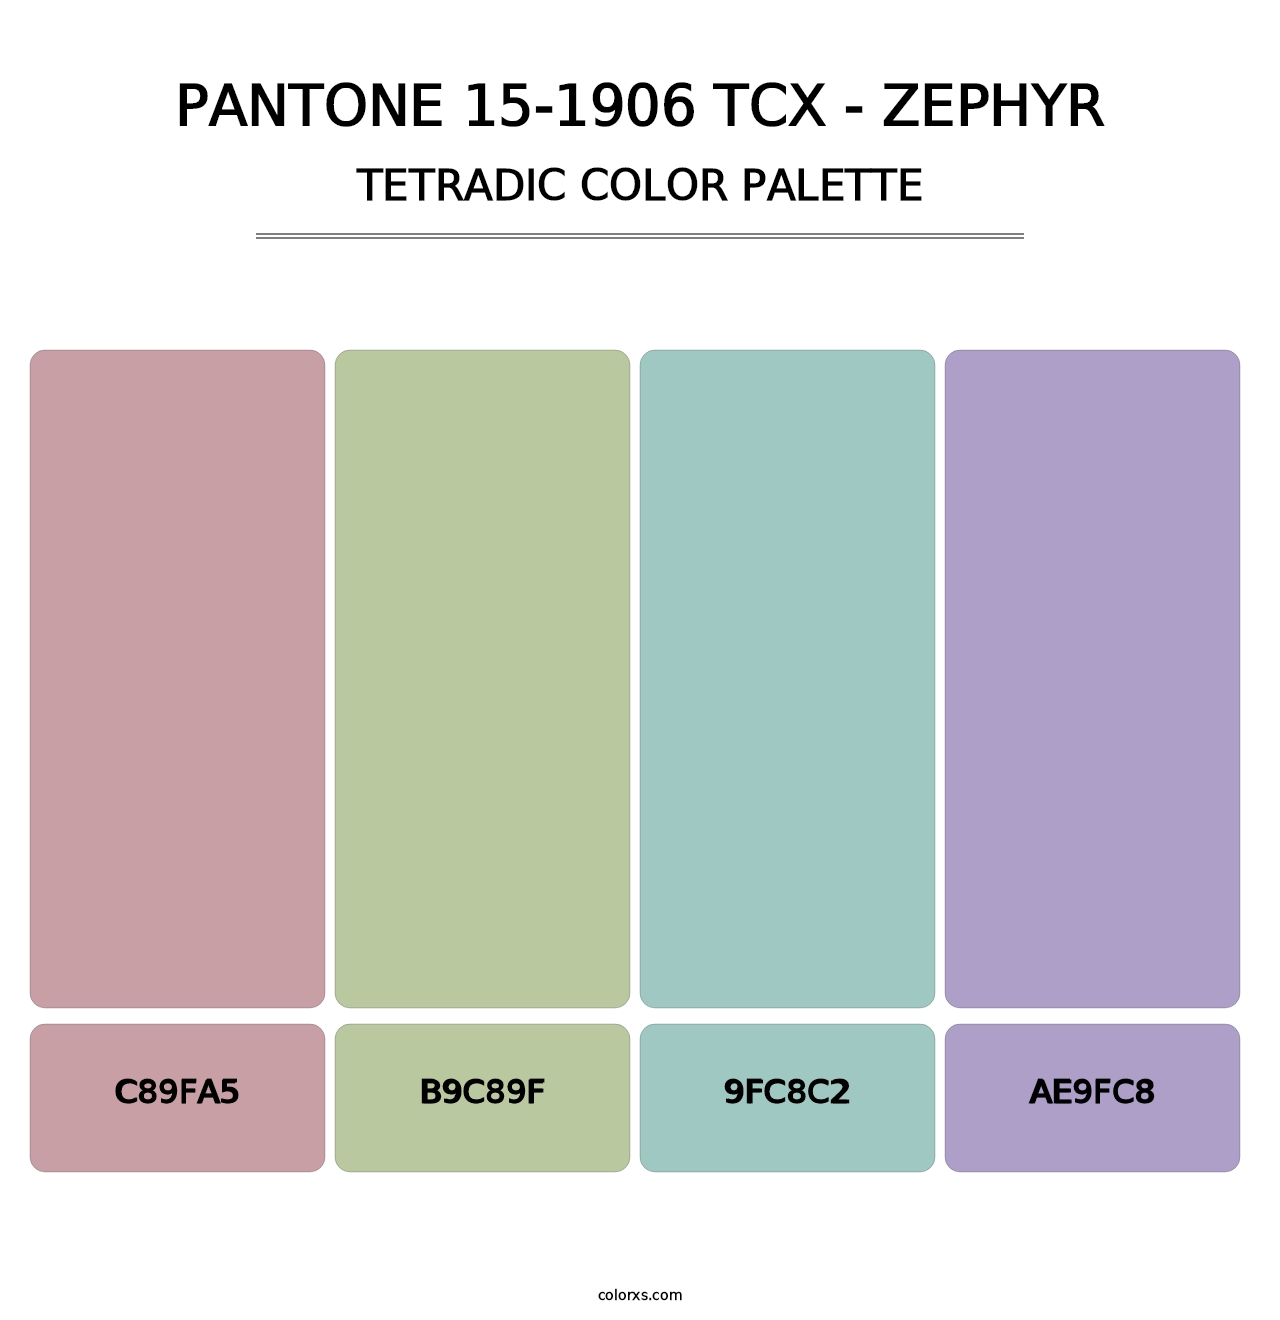 PANTONE 15-1906 TCX - Zephyr - Tetradic Color Palette